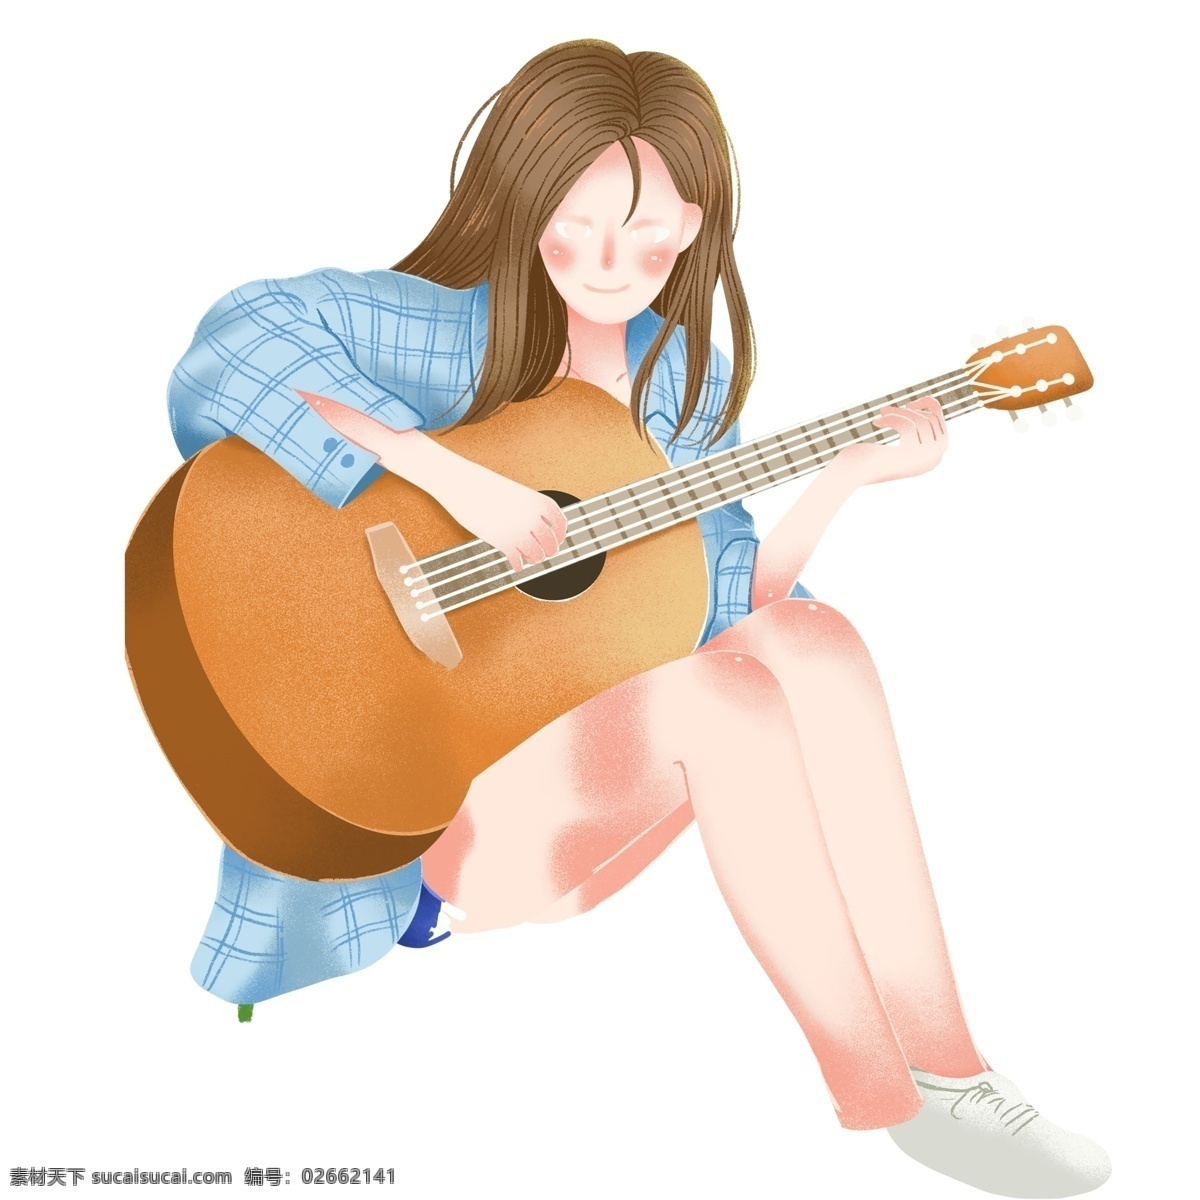 可爱 女孩 弹 吉他 图案 文雅 弹吉他 插画 绘画素材 创意 简约 小清新 水彩 装饰图案 文艺 卡通